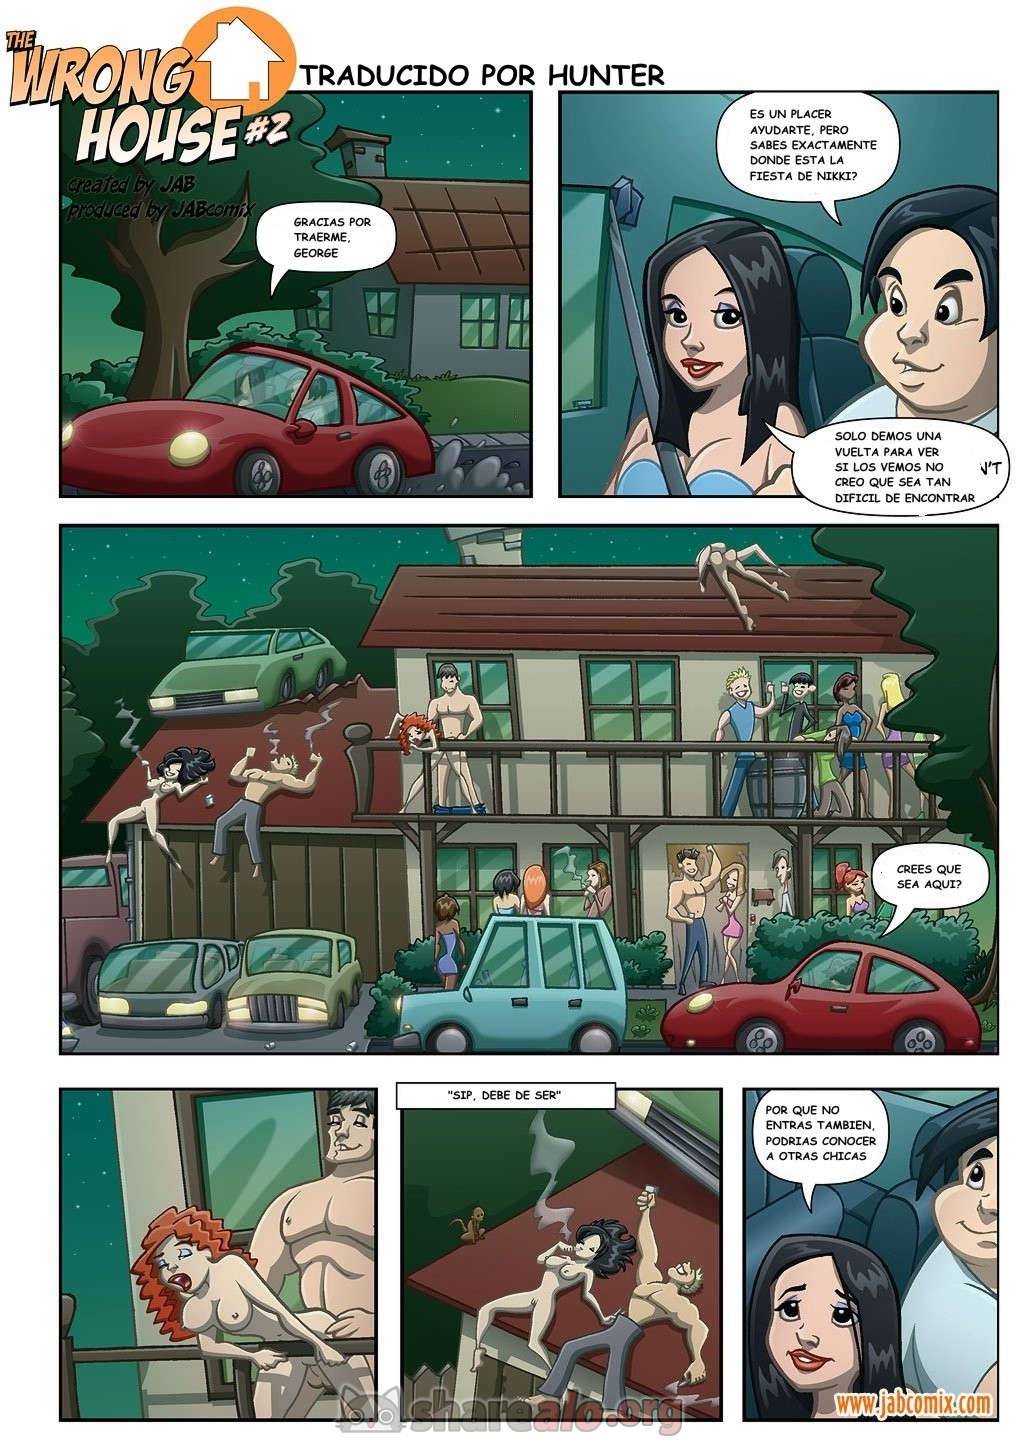 Wrong House #2 - 9 - Comics Porno - Hentai Manga - Cartoon XXX